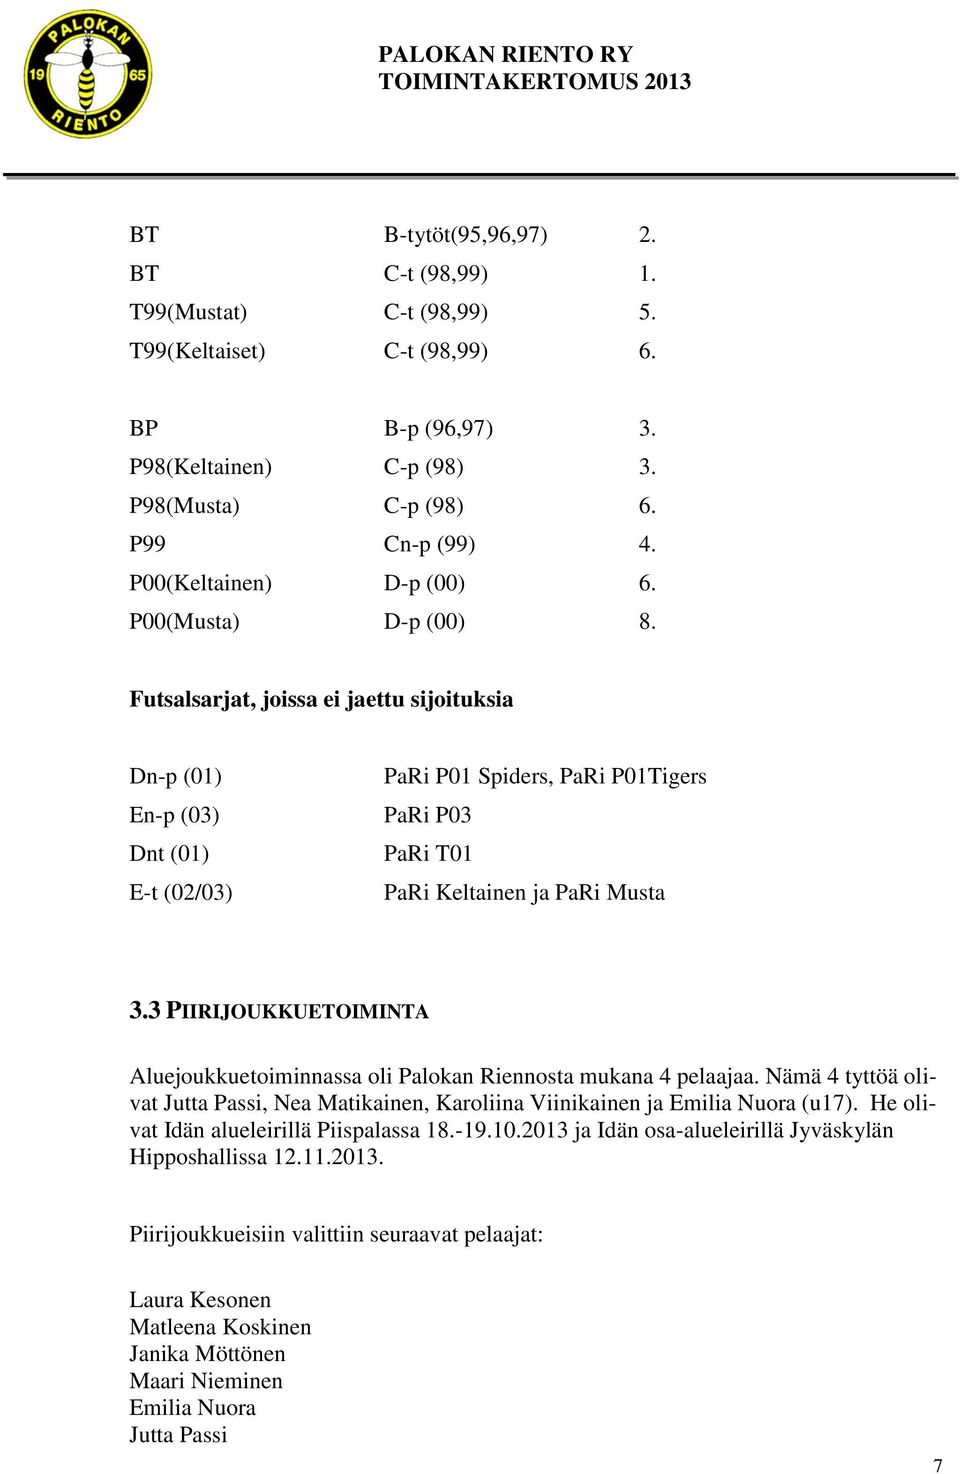 Futsalsarjat, joissa ei jaettu sijoituksia Dn-p (01) En-p (03) Dnt (01) E-t (02/03) PaRi P01 Spiders, PaRi P01Tigers PaRi P03 PaRi T01 PaRi Keltainen ja PaRi Musta 3.